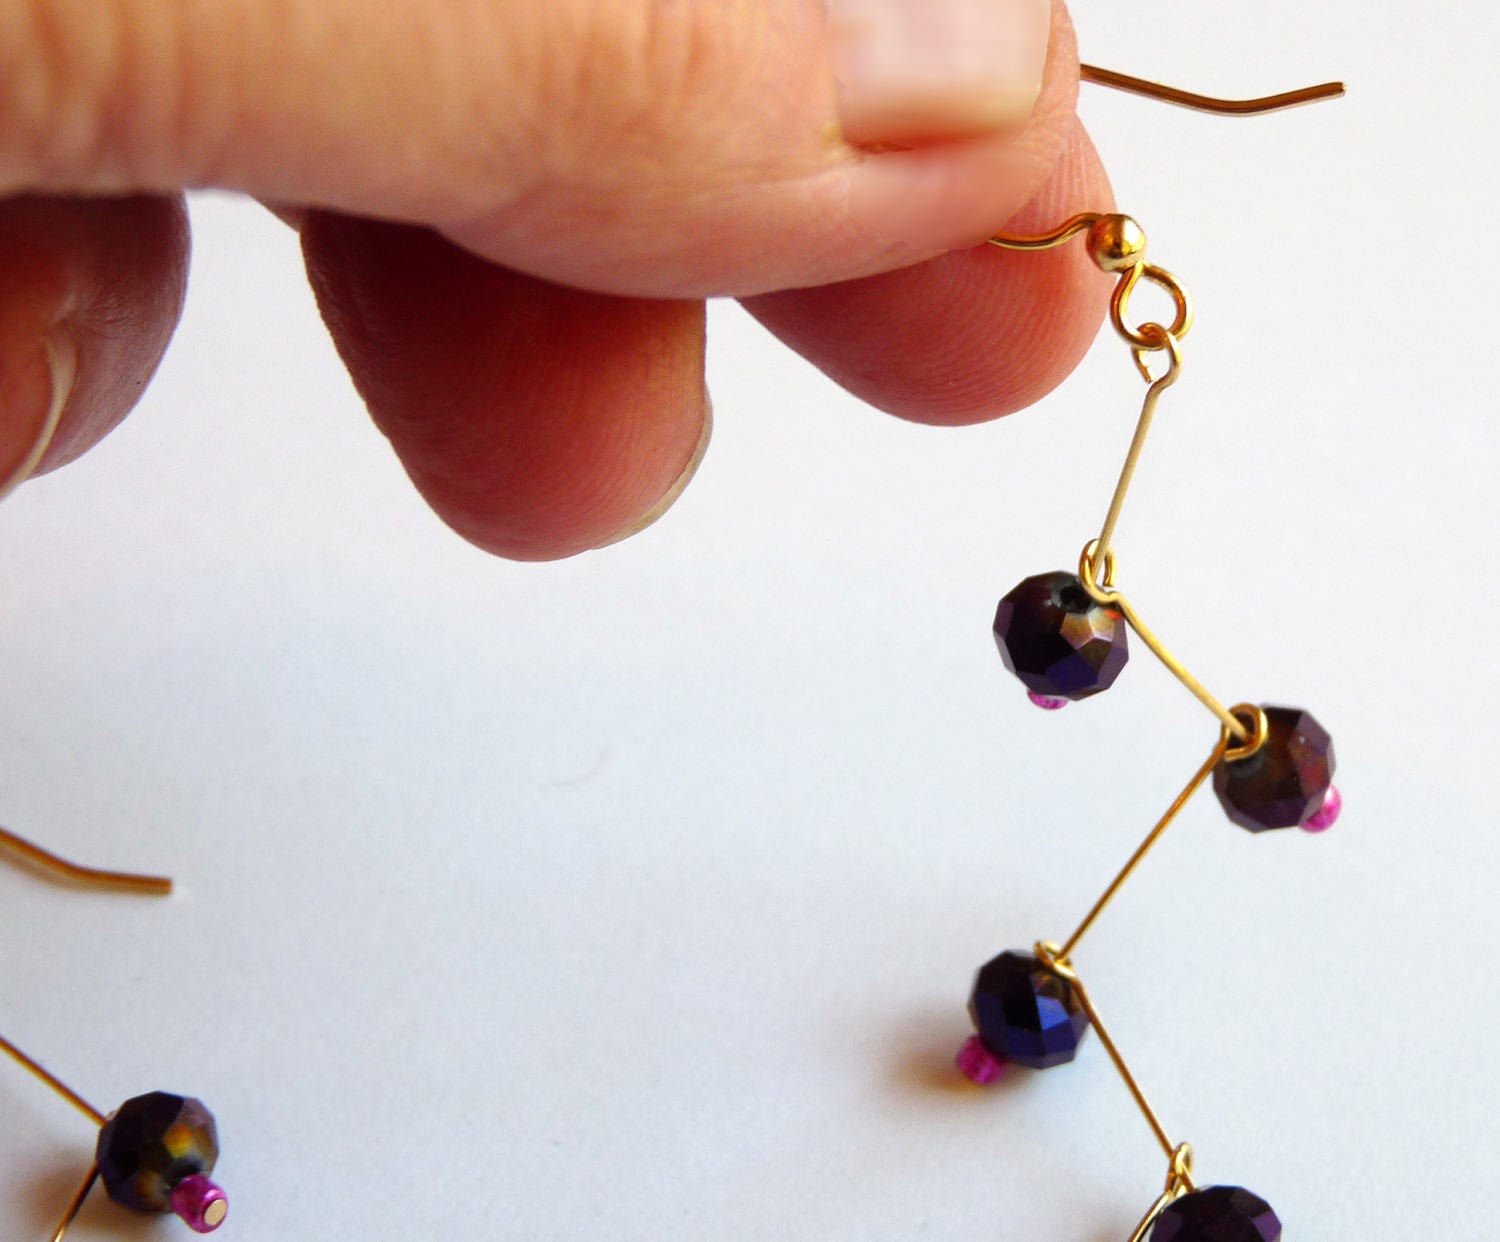 DIY Earring Kit  Jewelry by Dev — Firefly Fiber Arts Studio